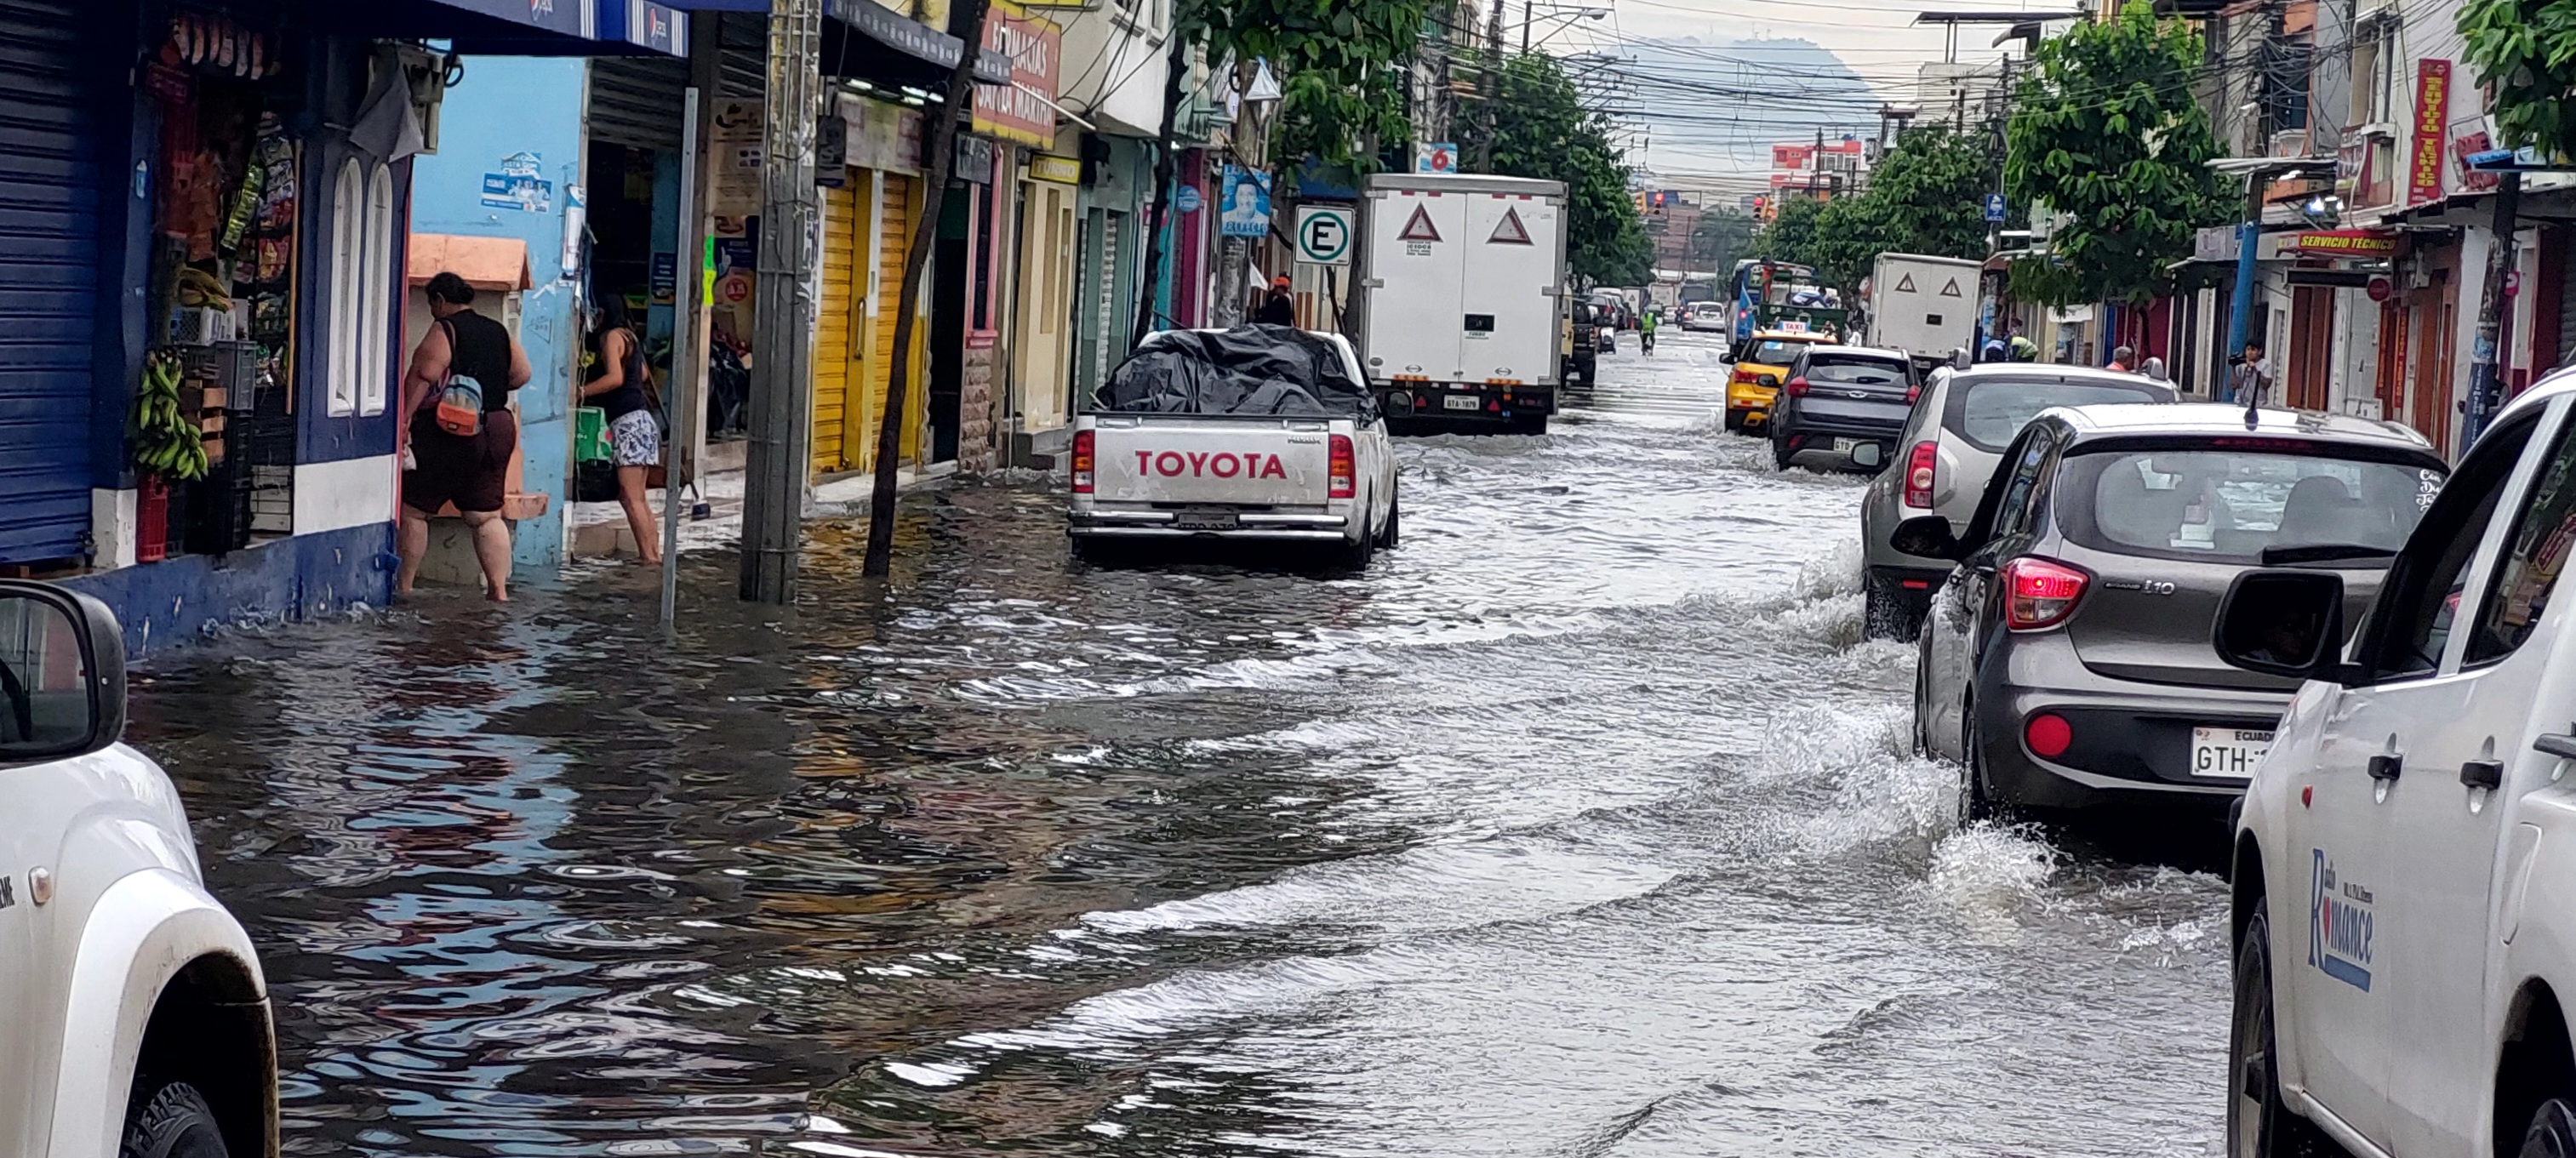 Hasta peces se hallaron en sistema de aguas lluvias de Guayaquil tras  tormenta eléctrica, Comunidad, Guayaquil